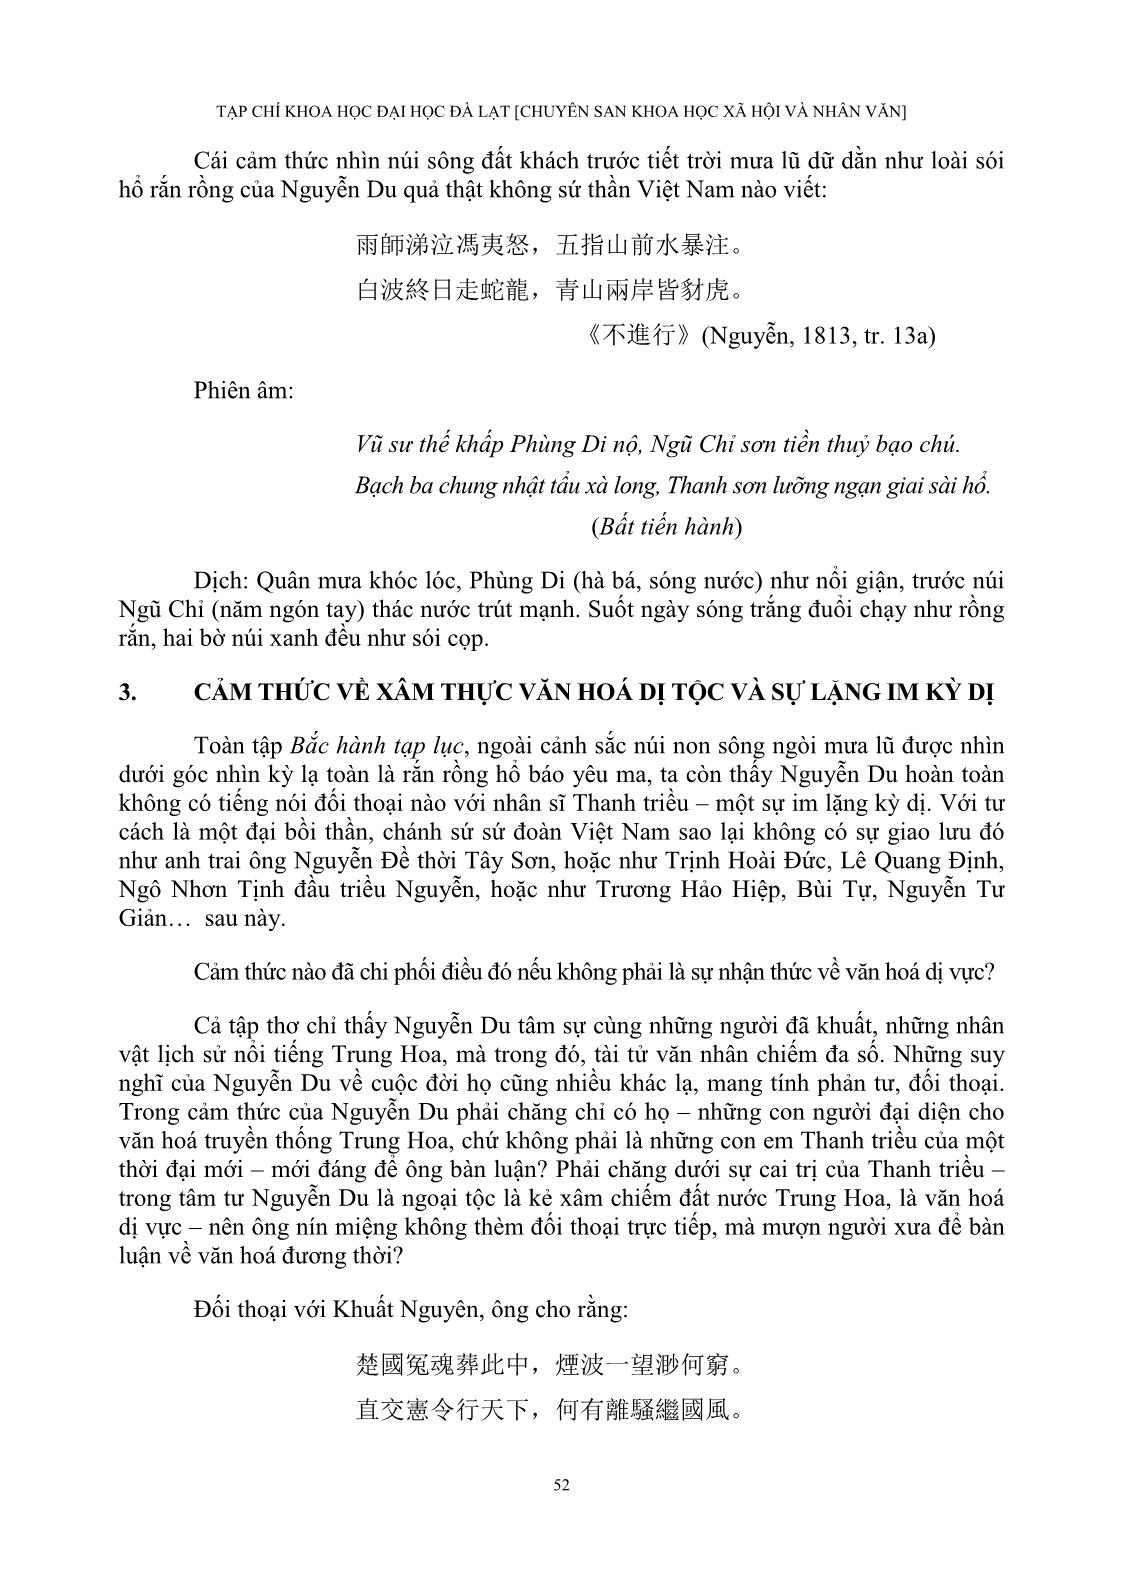 Cảm thức của Nguyễn Du về Trung Quốc Thanh triều trong “Bắc hành tạp lục” trang 10